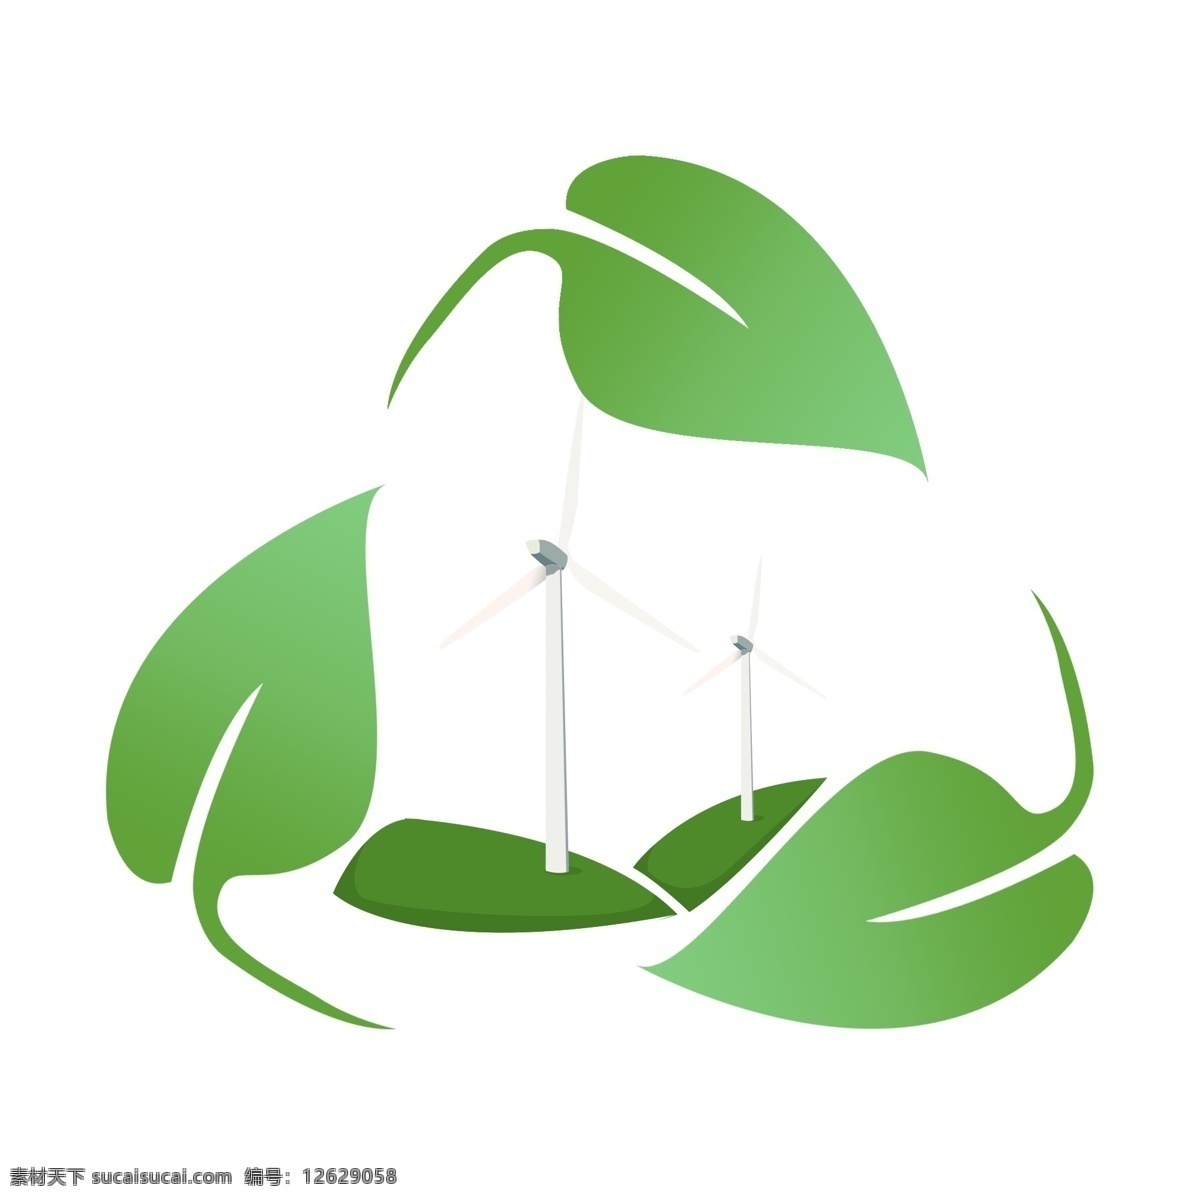 绿色 叶子 风车 插画 绿色的叶子 卡通插画 风车插画 环保风车 风车发电 风力发电 叶子的风车